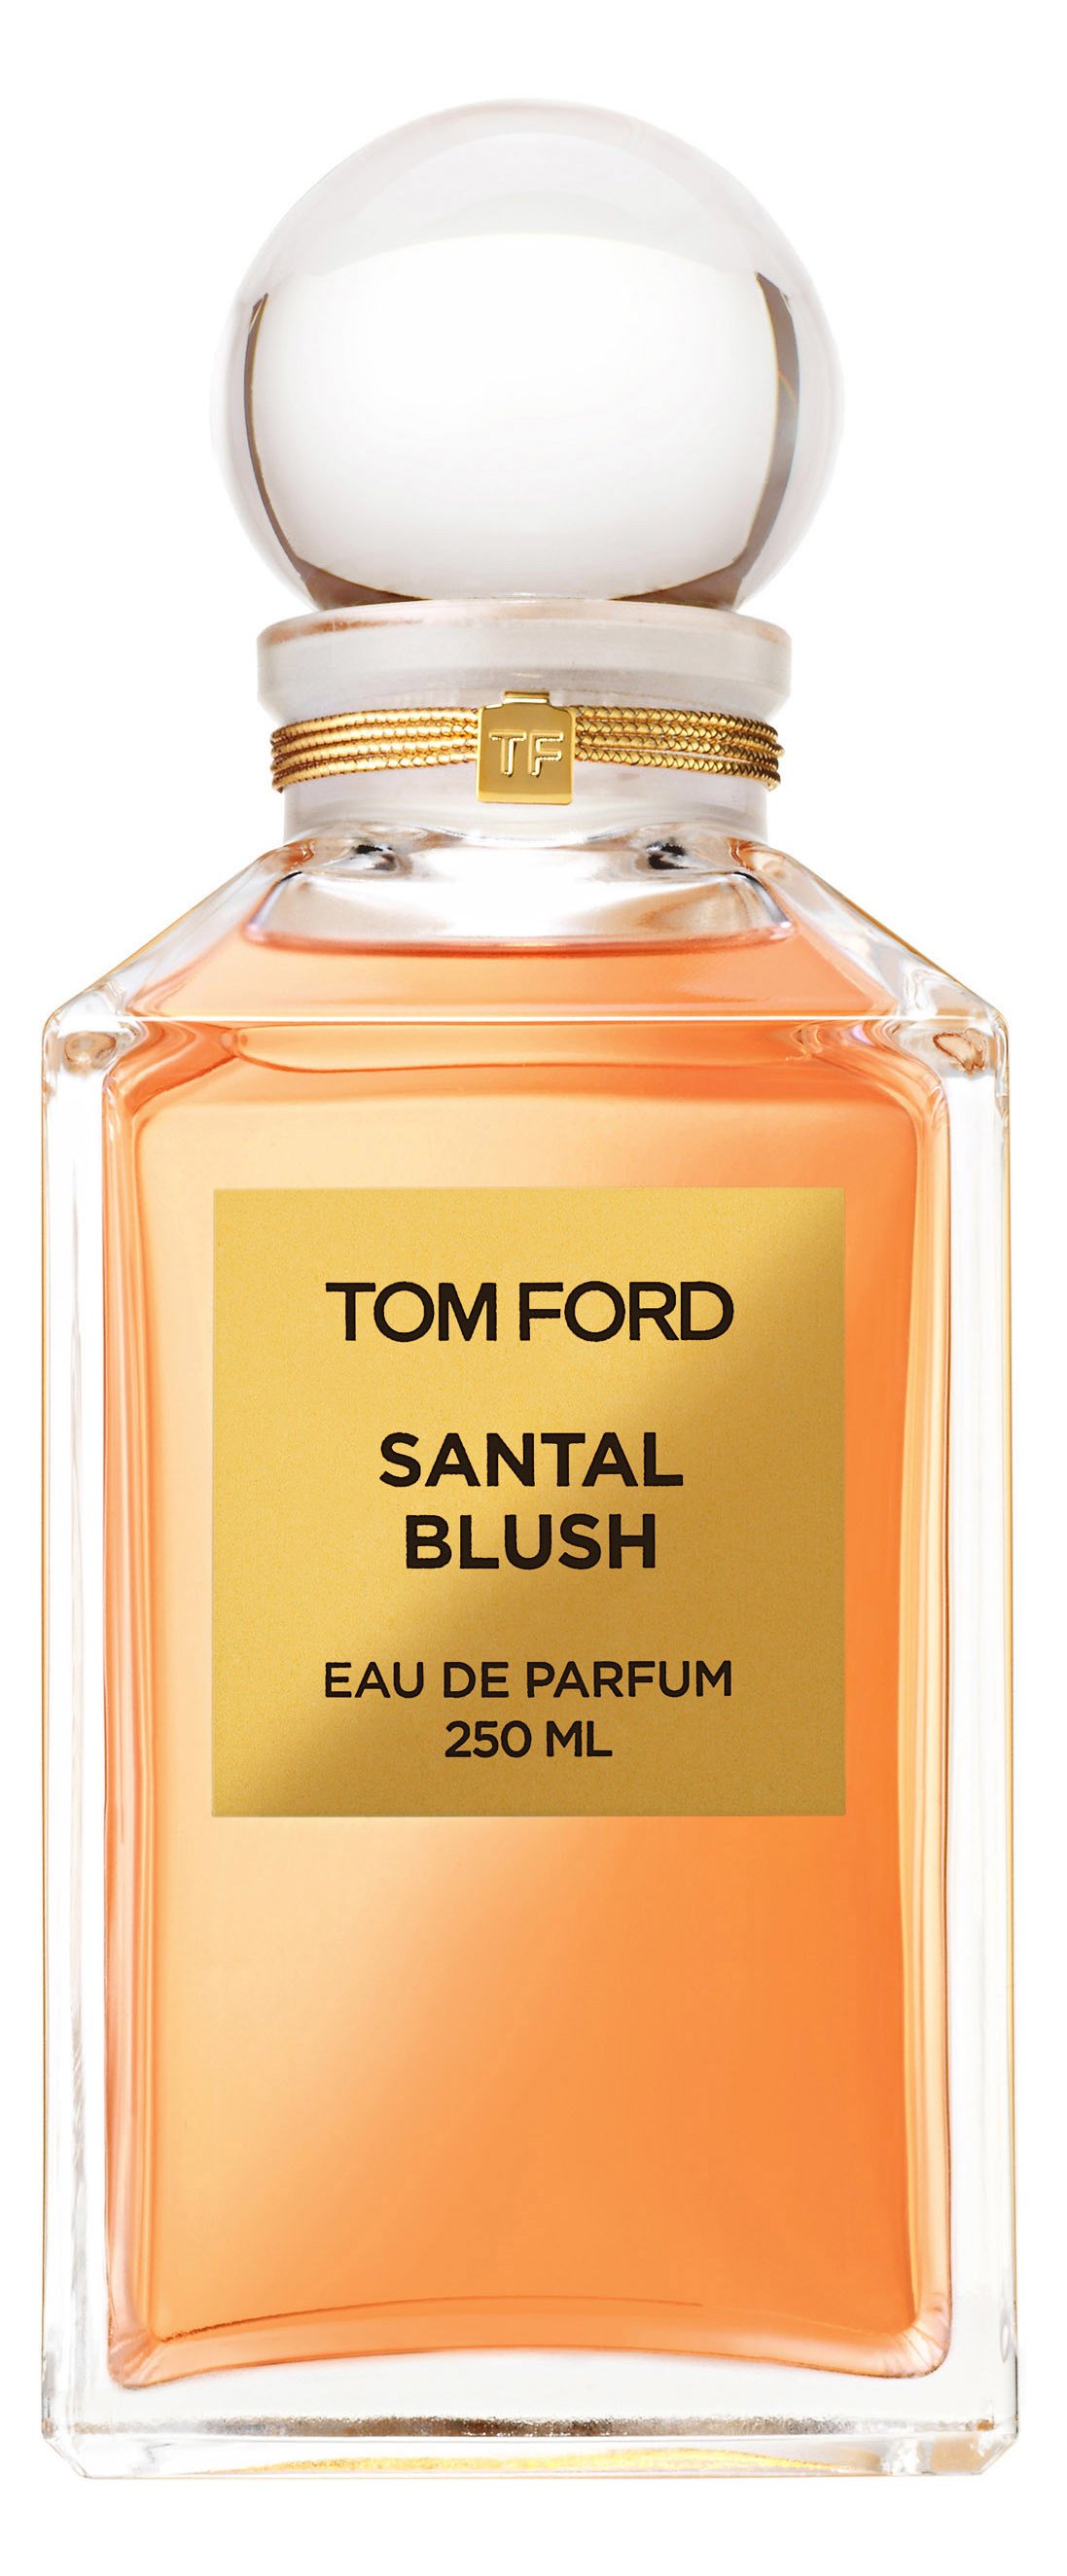 Tom Ford Santal Blush perfume 